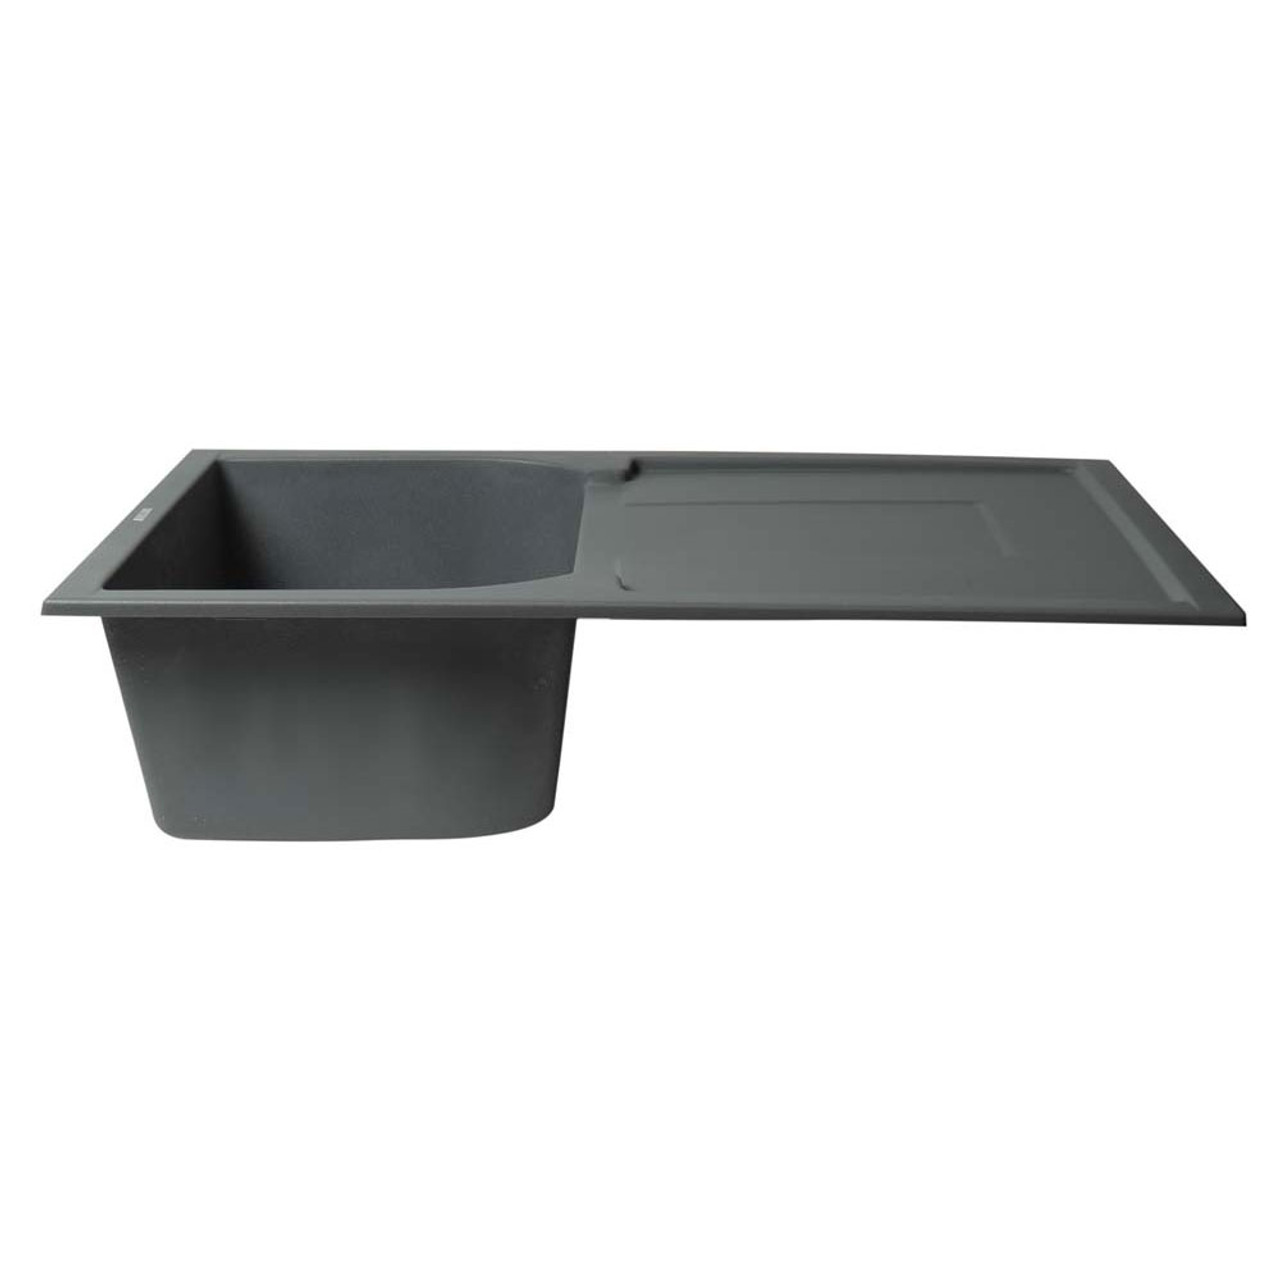 ALFI 34 Single Bowl Granite Composite Kitchen Sink with Drainboard, White,  AB1620DI-W